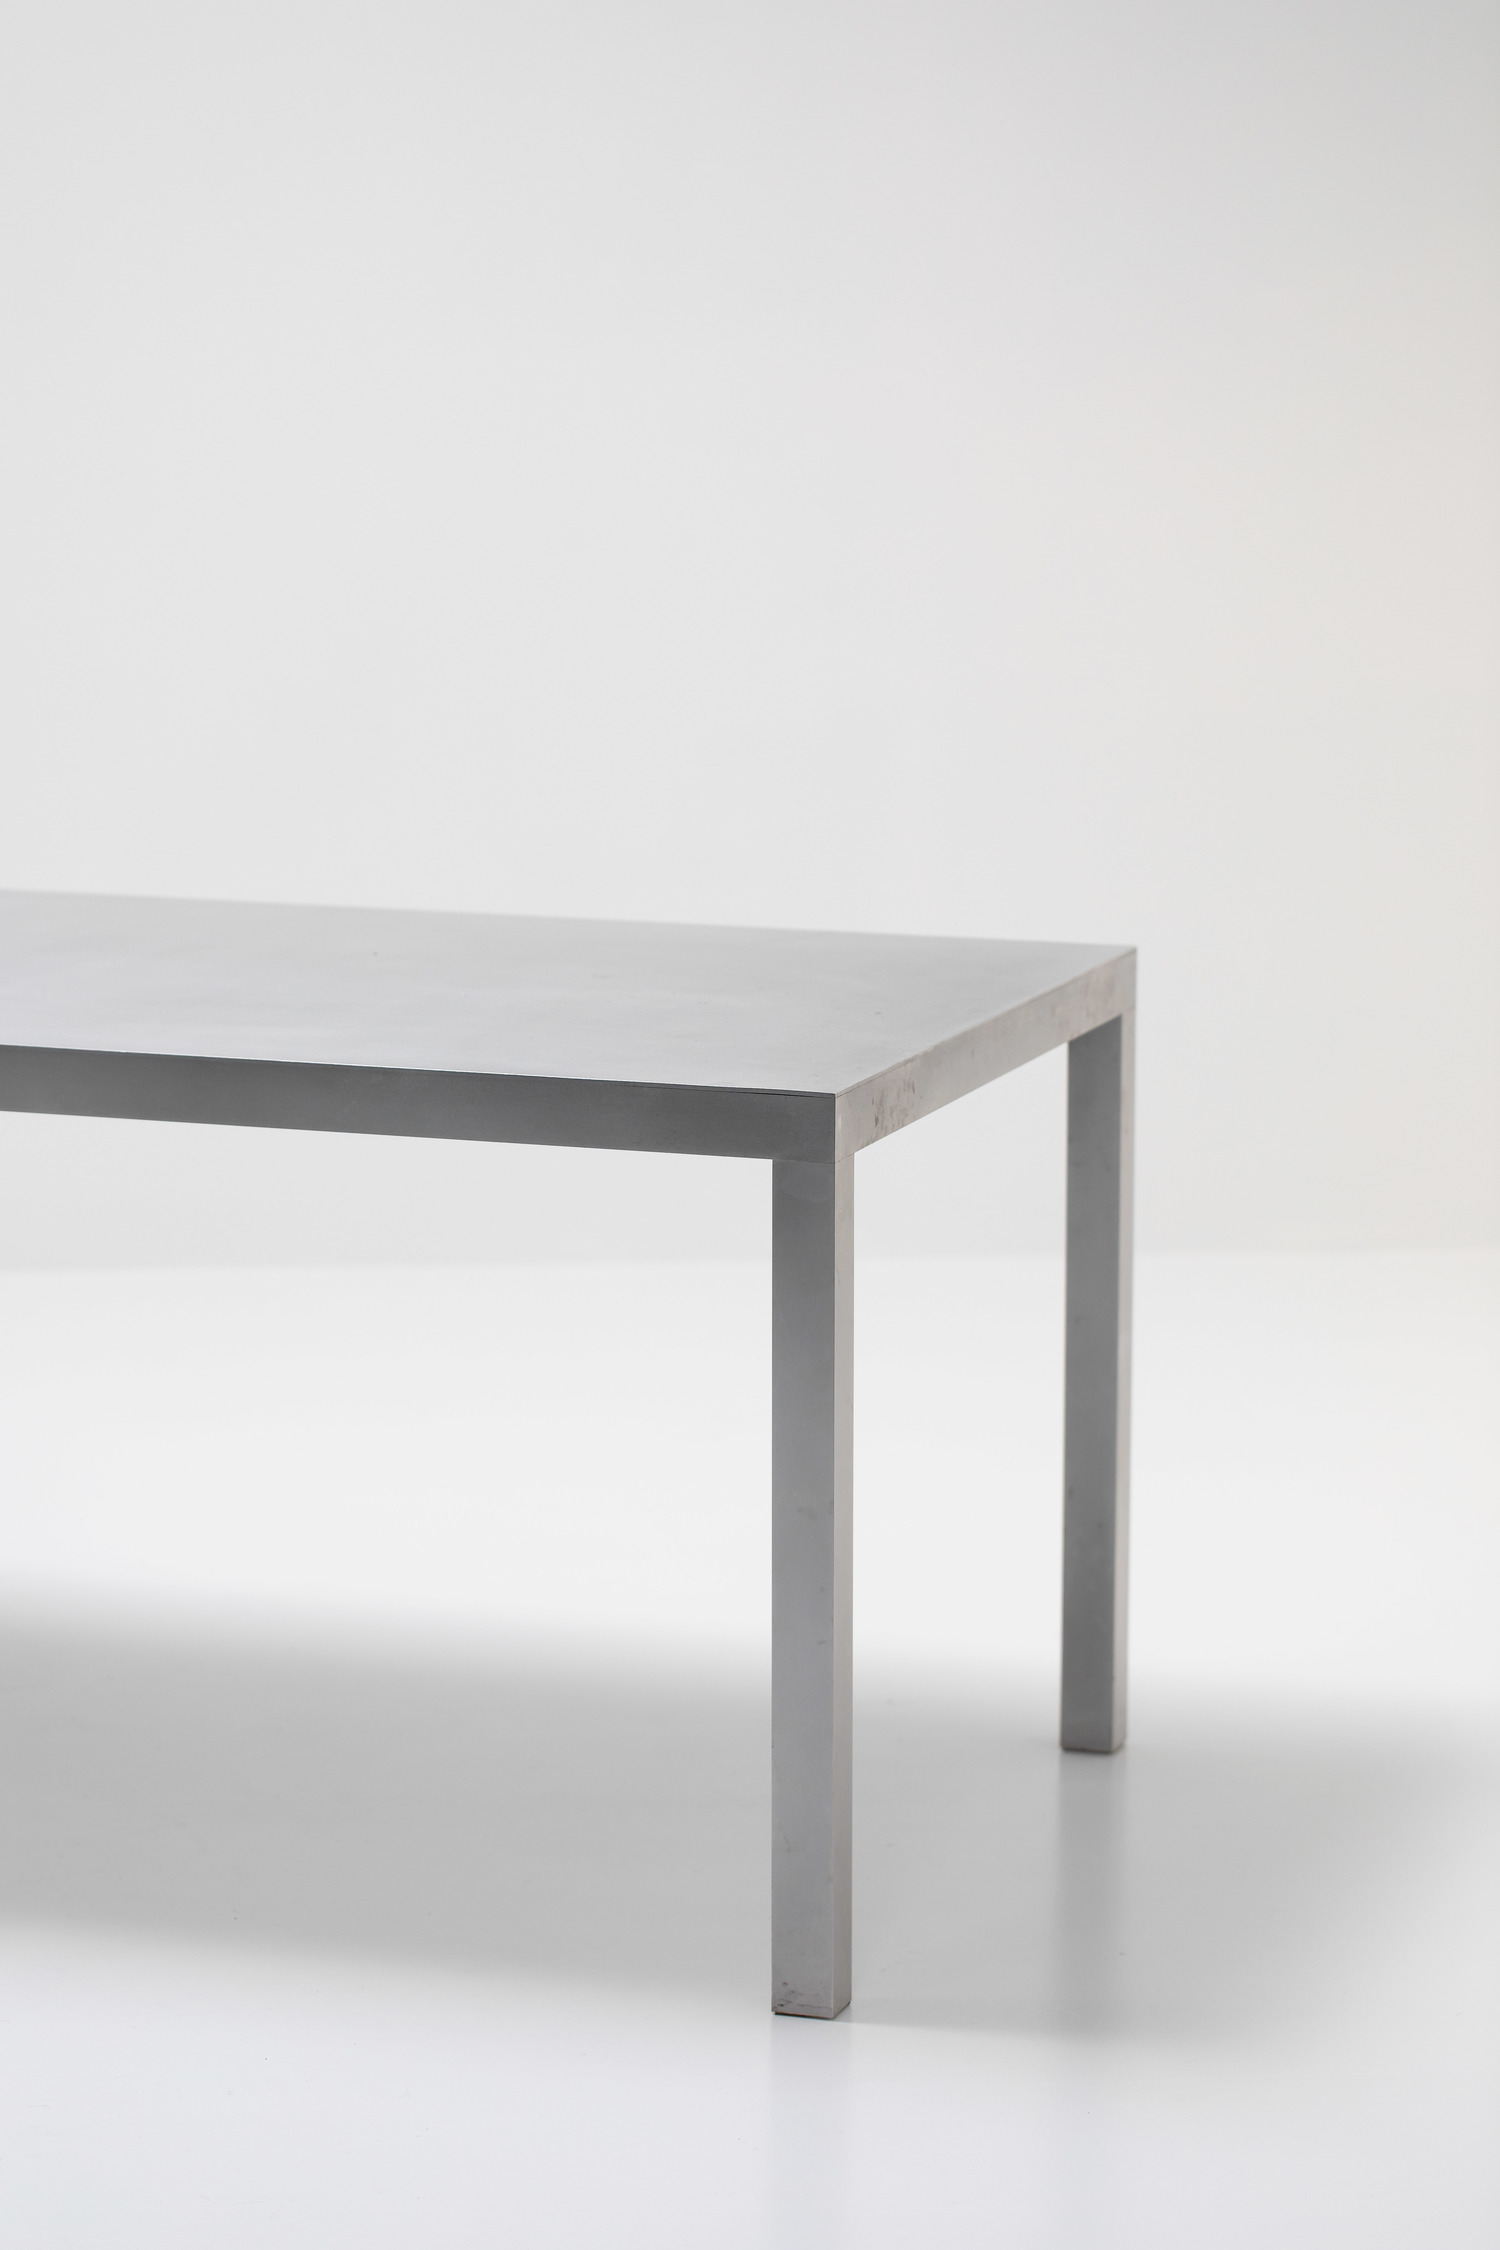 Maarten Van Severen aluminium table for Top Mouton